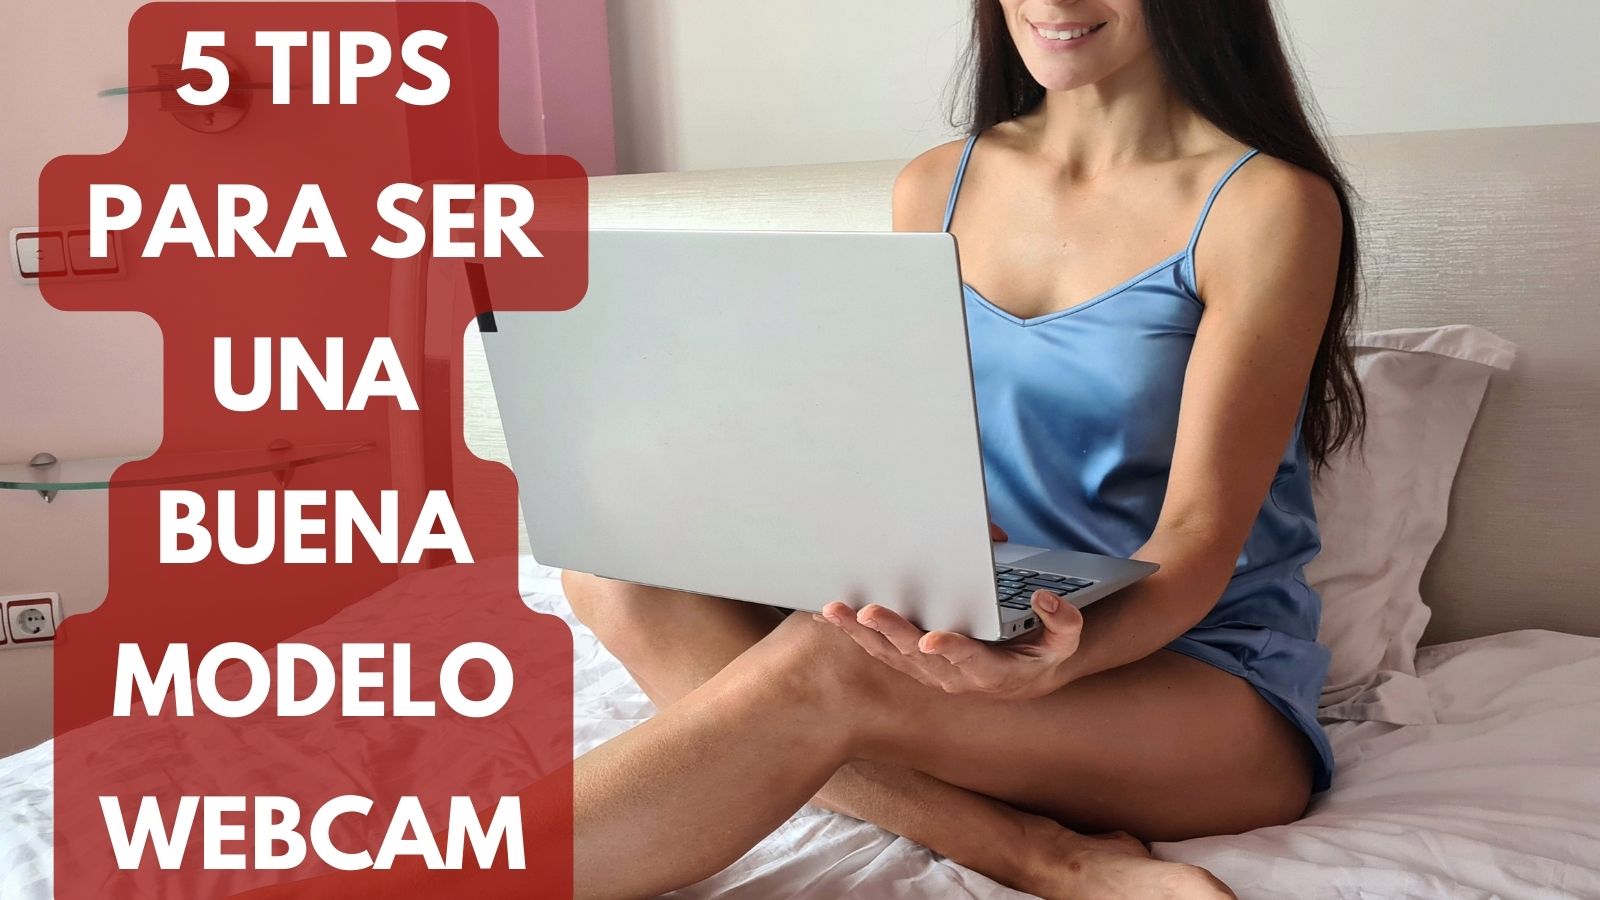 5 tips para ser una buena modelo webcam min - MaJu Studios » Modelos WebCam Manizales